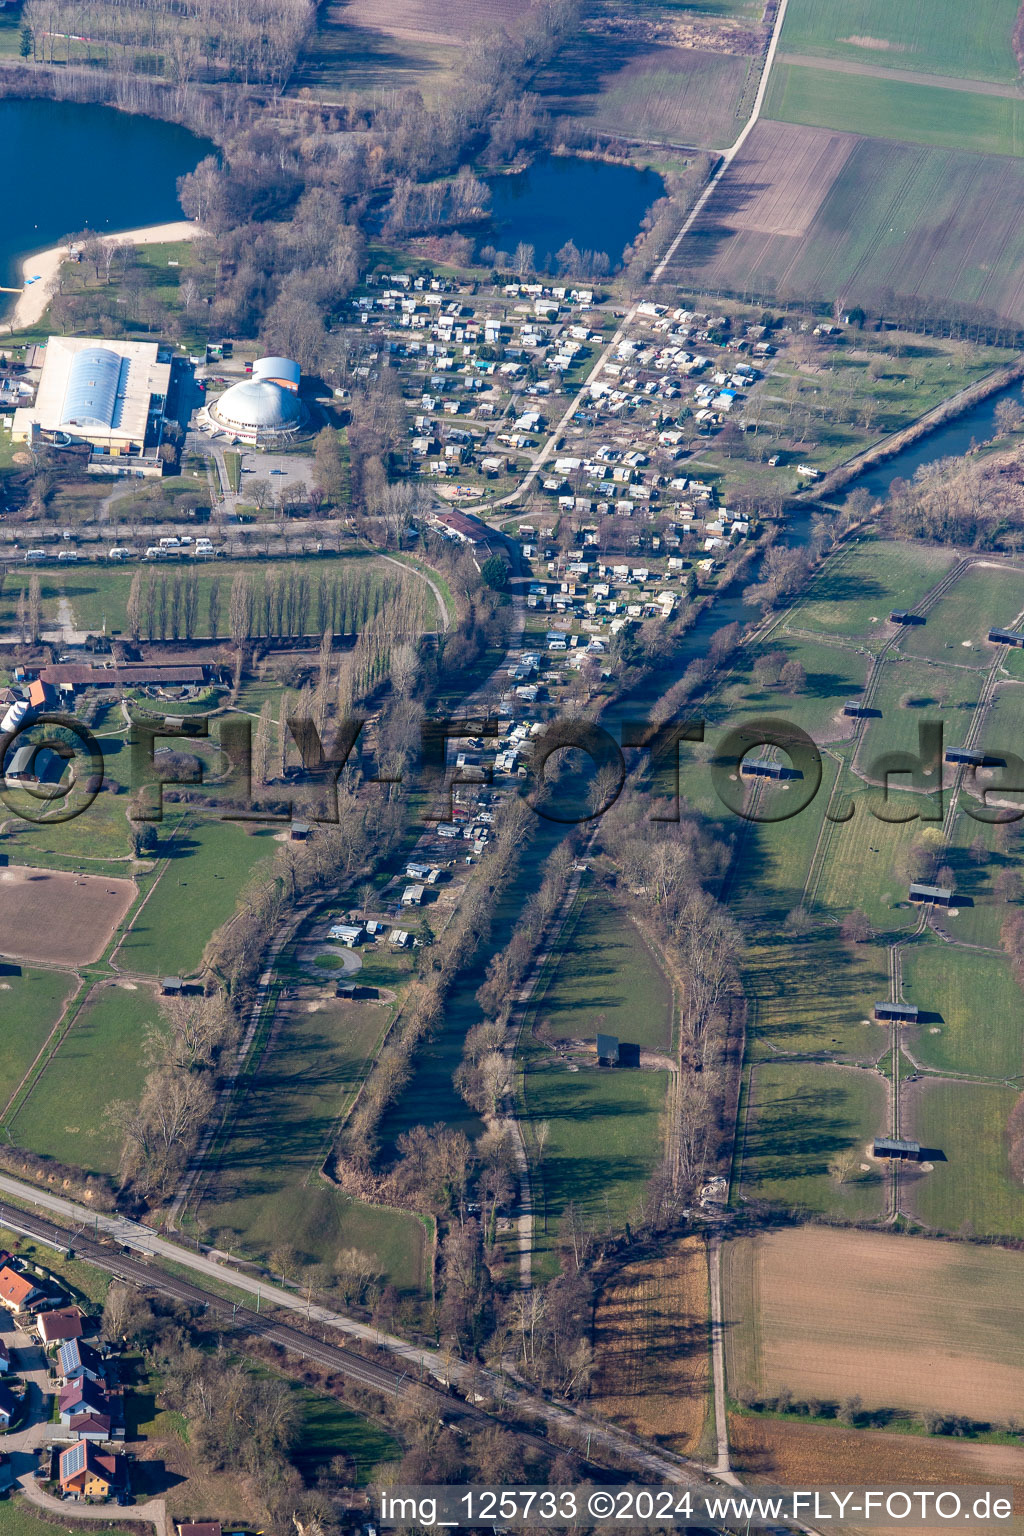 Vue aérienne de Camping Rülzheim entre Dampfnudel et la ferme d'autruches de Mhou à Rülzheim dans le département Rhénanie-Palatinat, Allemagne